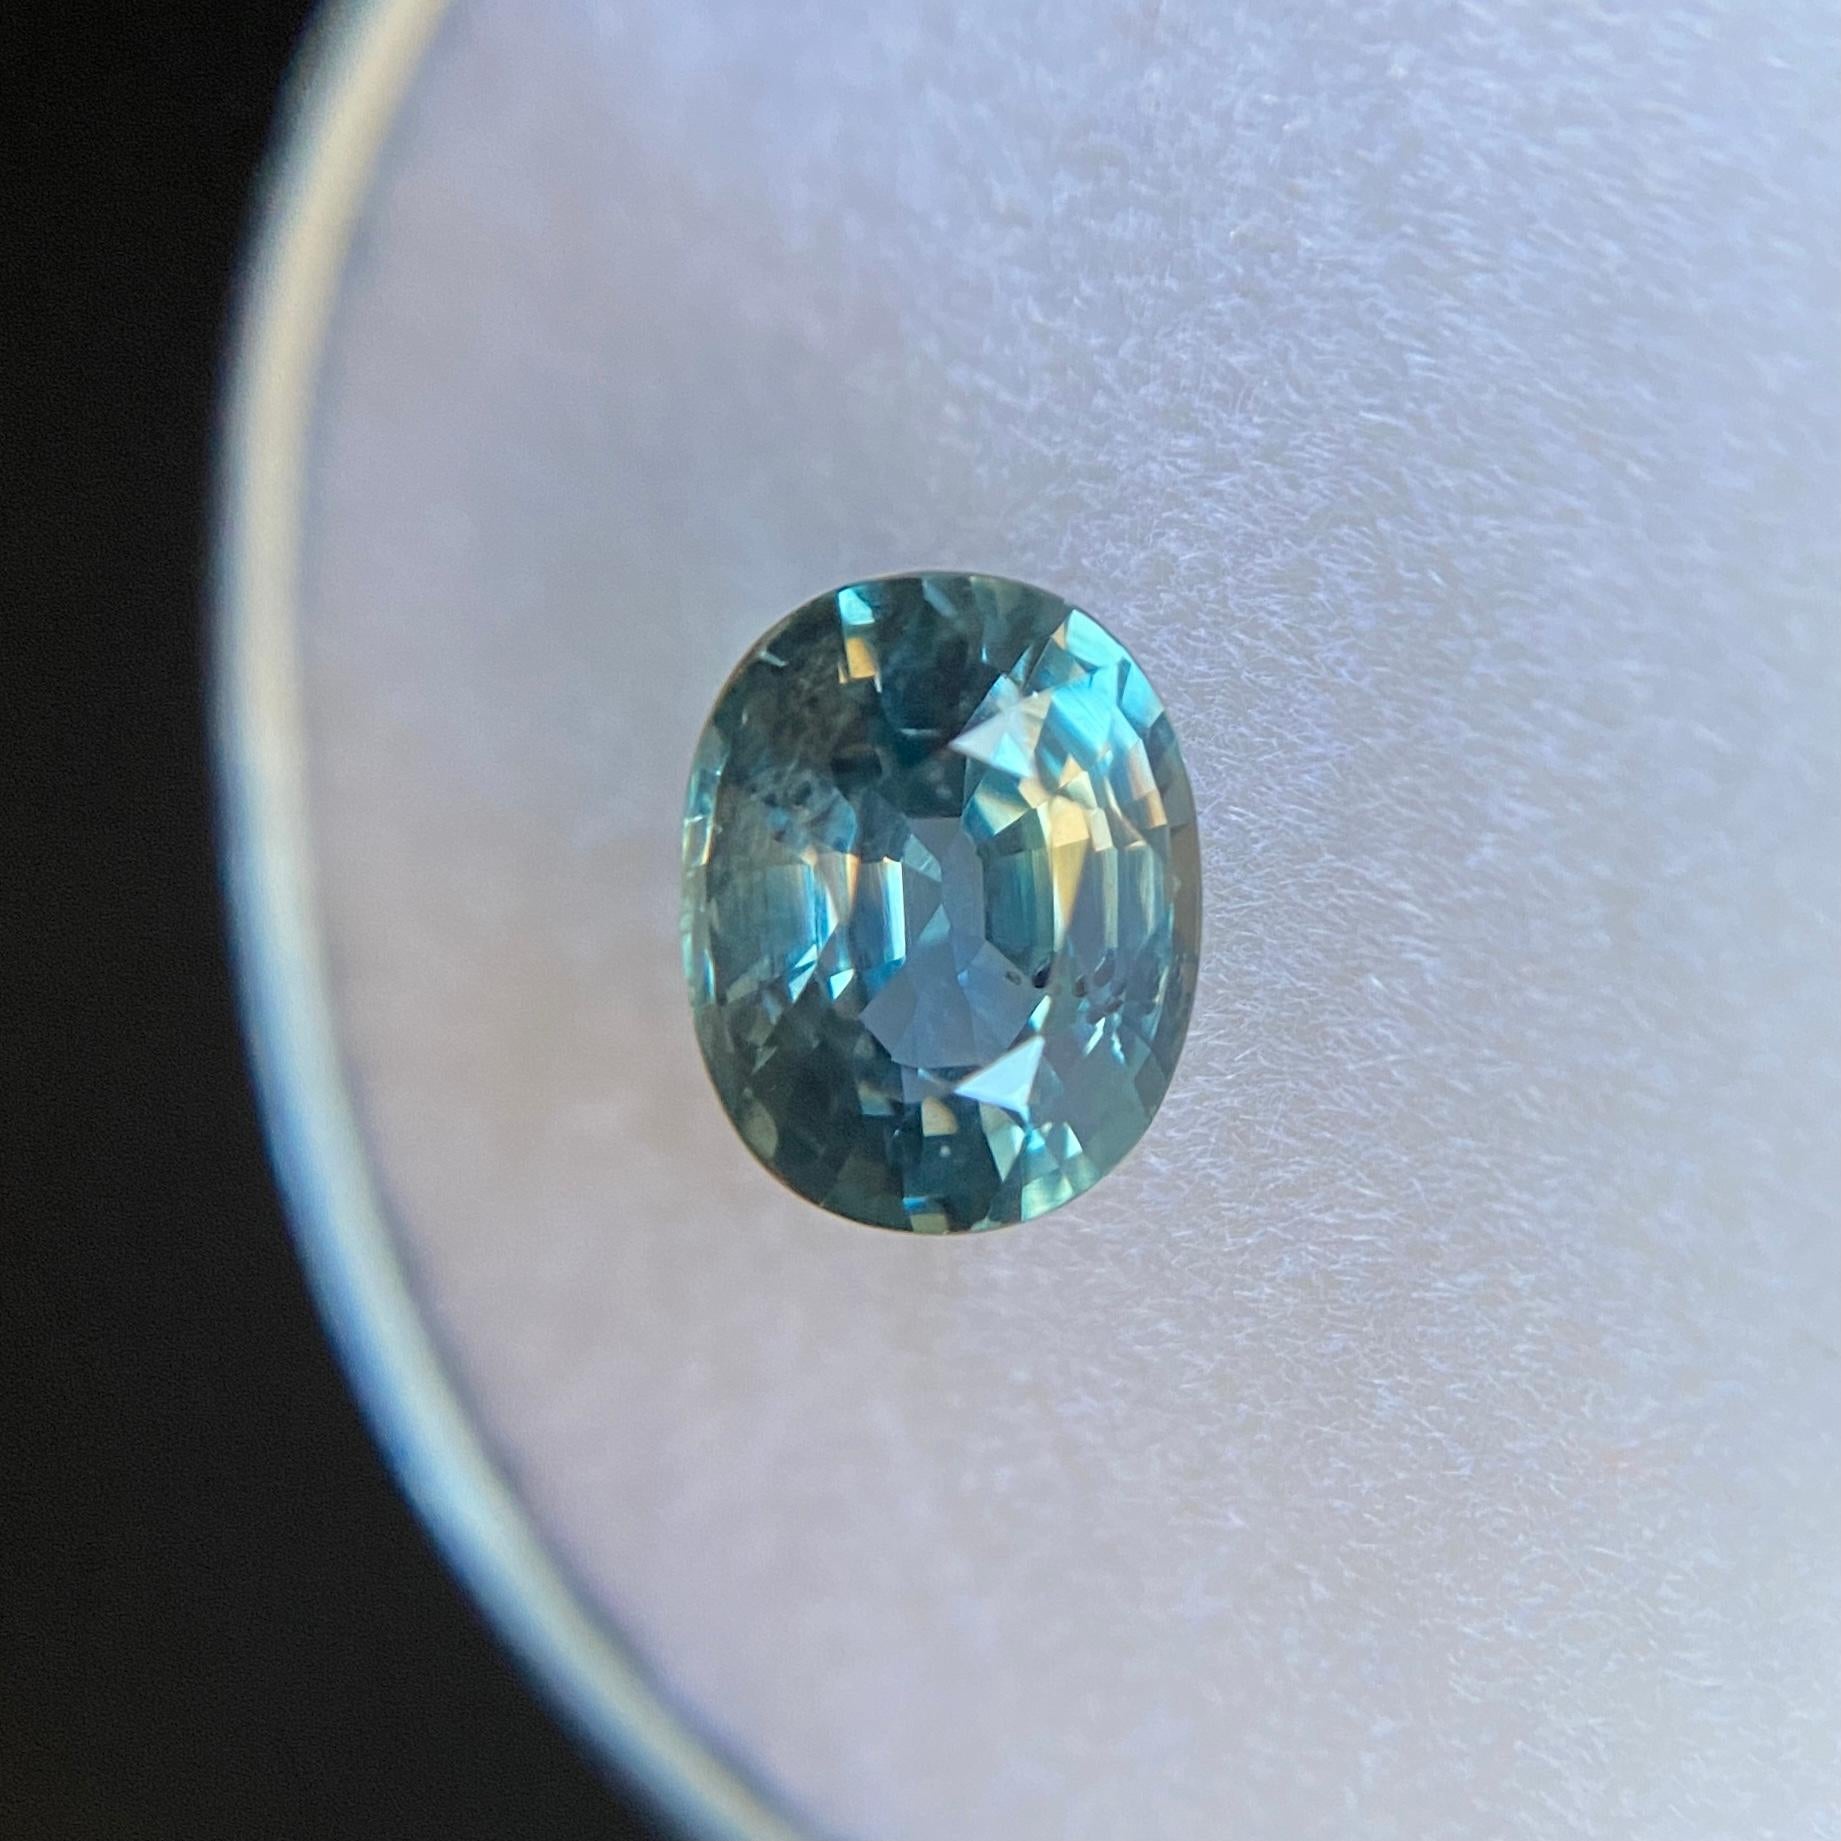 Feiner blauer unbehandelter Teal Sapphire Edelstein.

Unerhitzter Saphir feiner Qualität mit einer schönen grünblauen Farbe.

Vollständig von GIA zertifiziert, was bestätigt, dass der Stein natürlich und unbehandelt ist. Sehr selten bei natürlichen